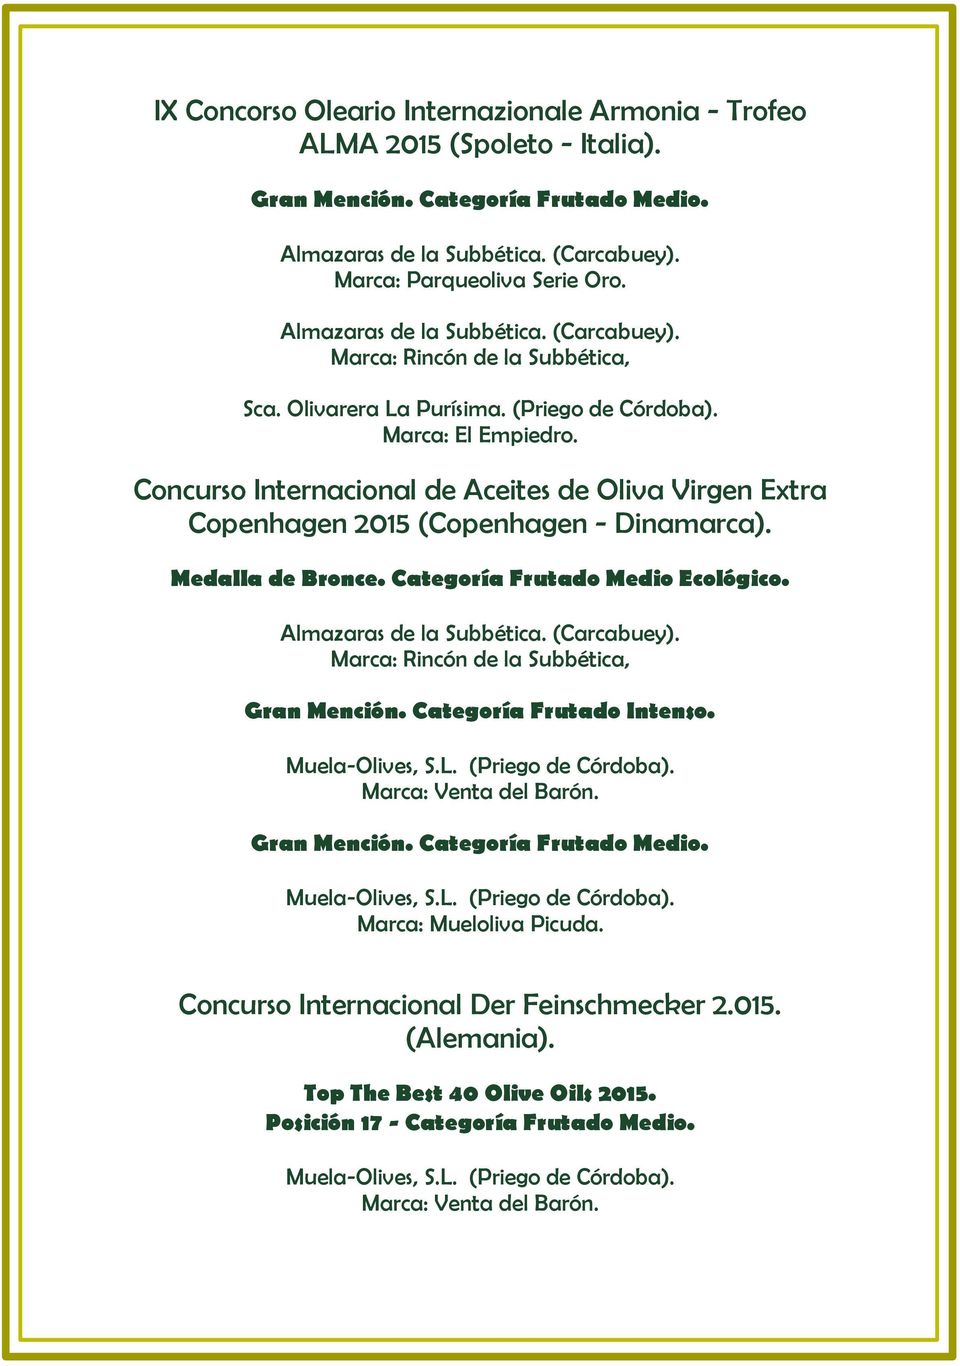 Concurso Internacional de Aceites de Oliva Virgen Extra Copenhagen 2015 (Copenhagen - Dinamarca). Medalla de Bronce. Categoría Frutado Medio Ecológico.